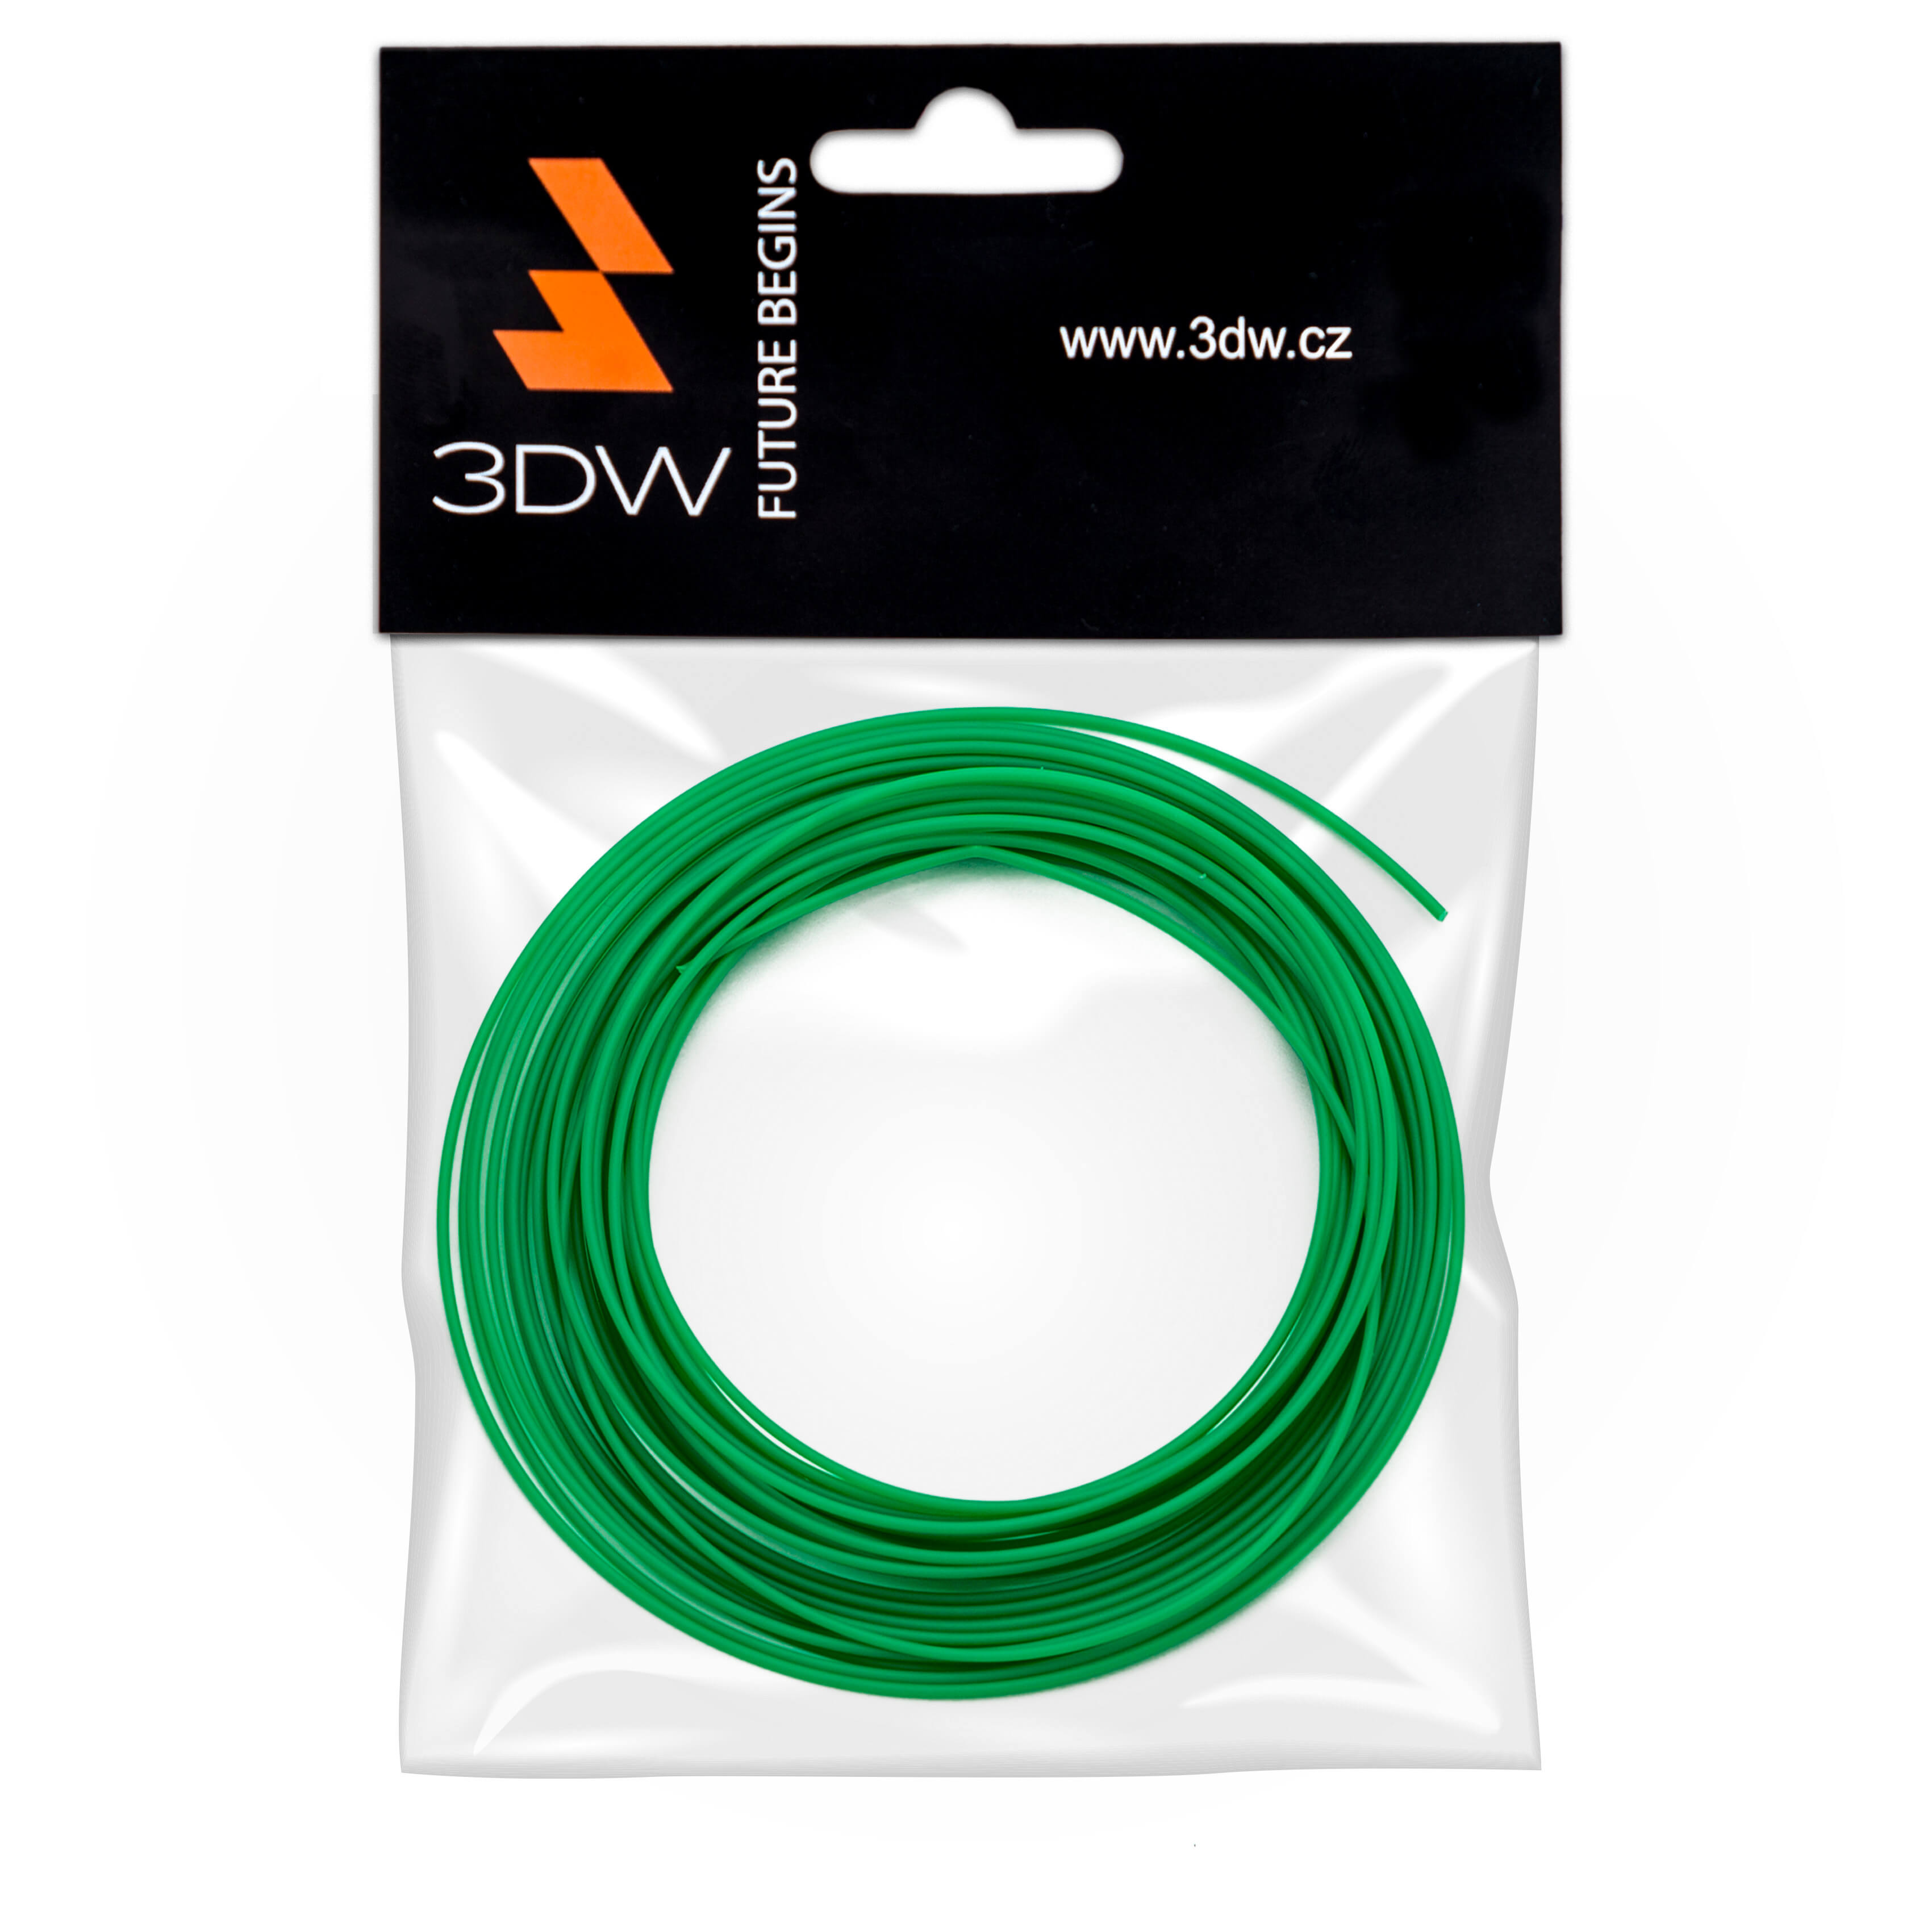 Tisková struna 3DW (filament) PLA, 1,75mm, 10m, zelená, 190-210°C